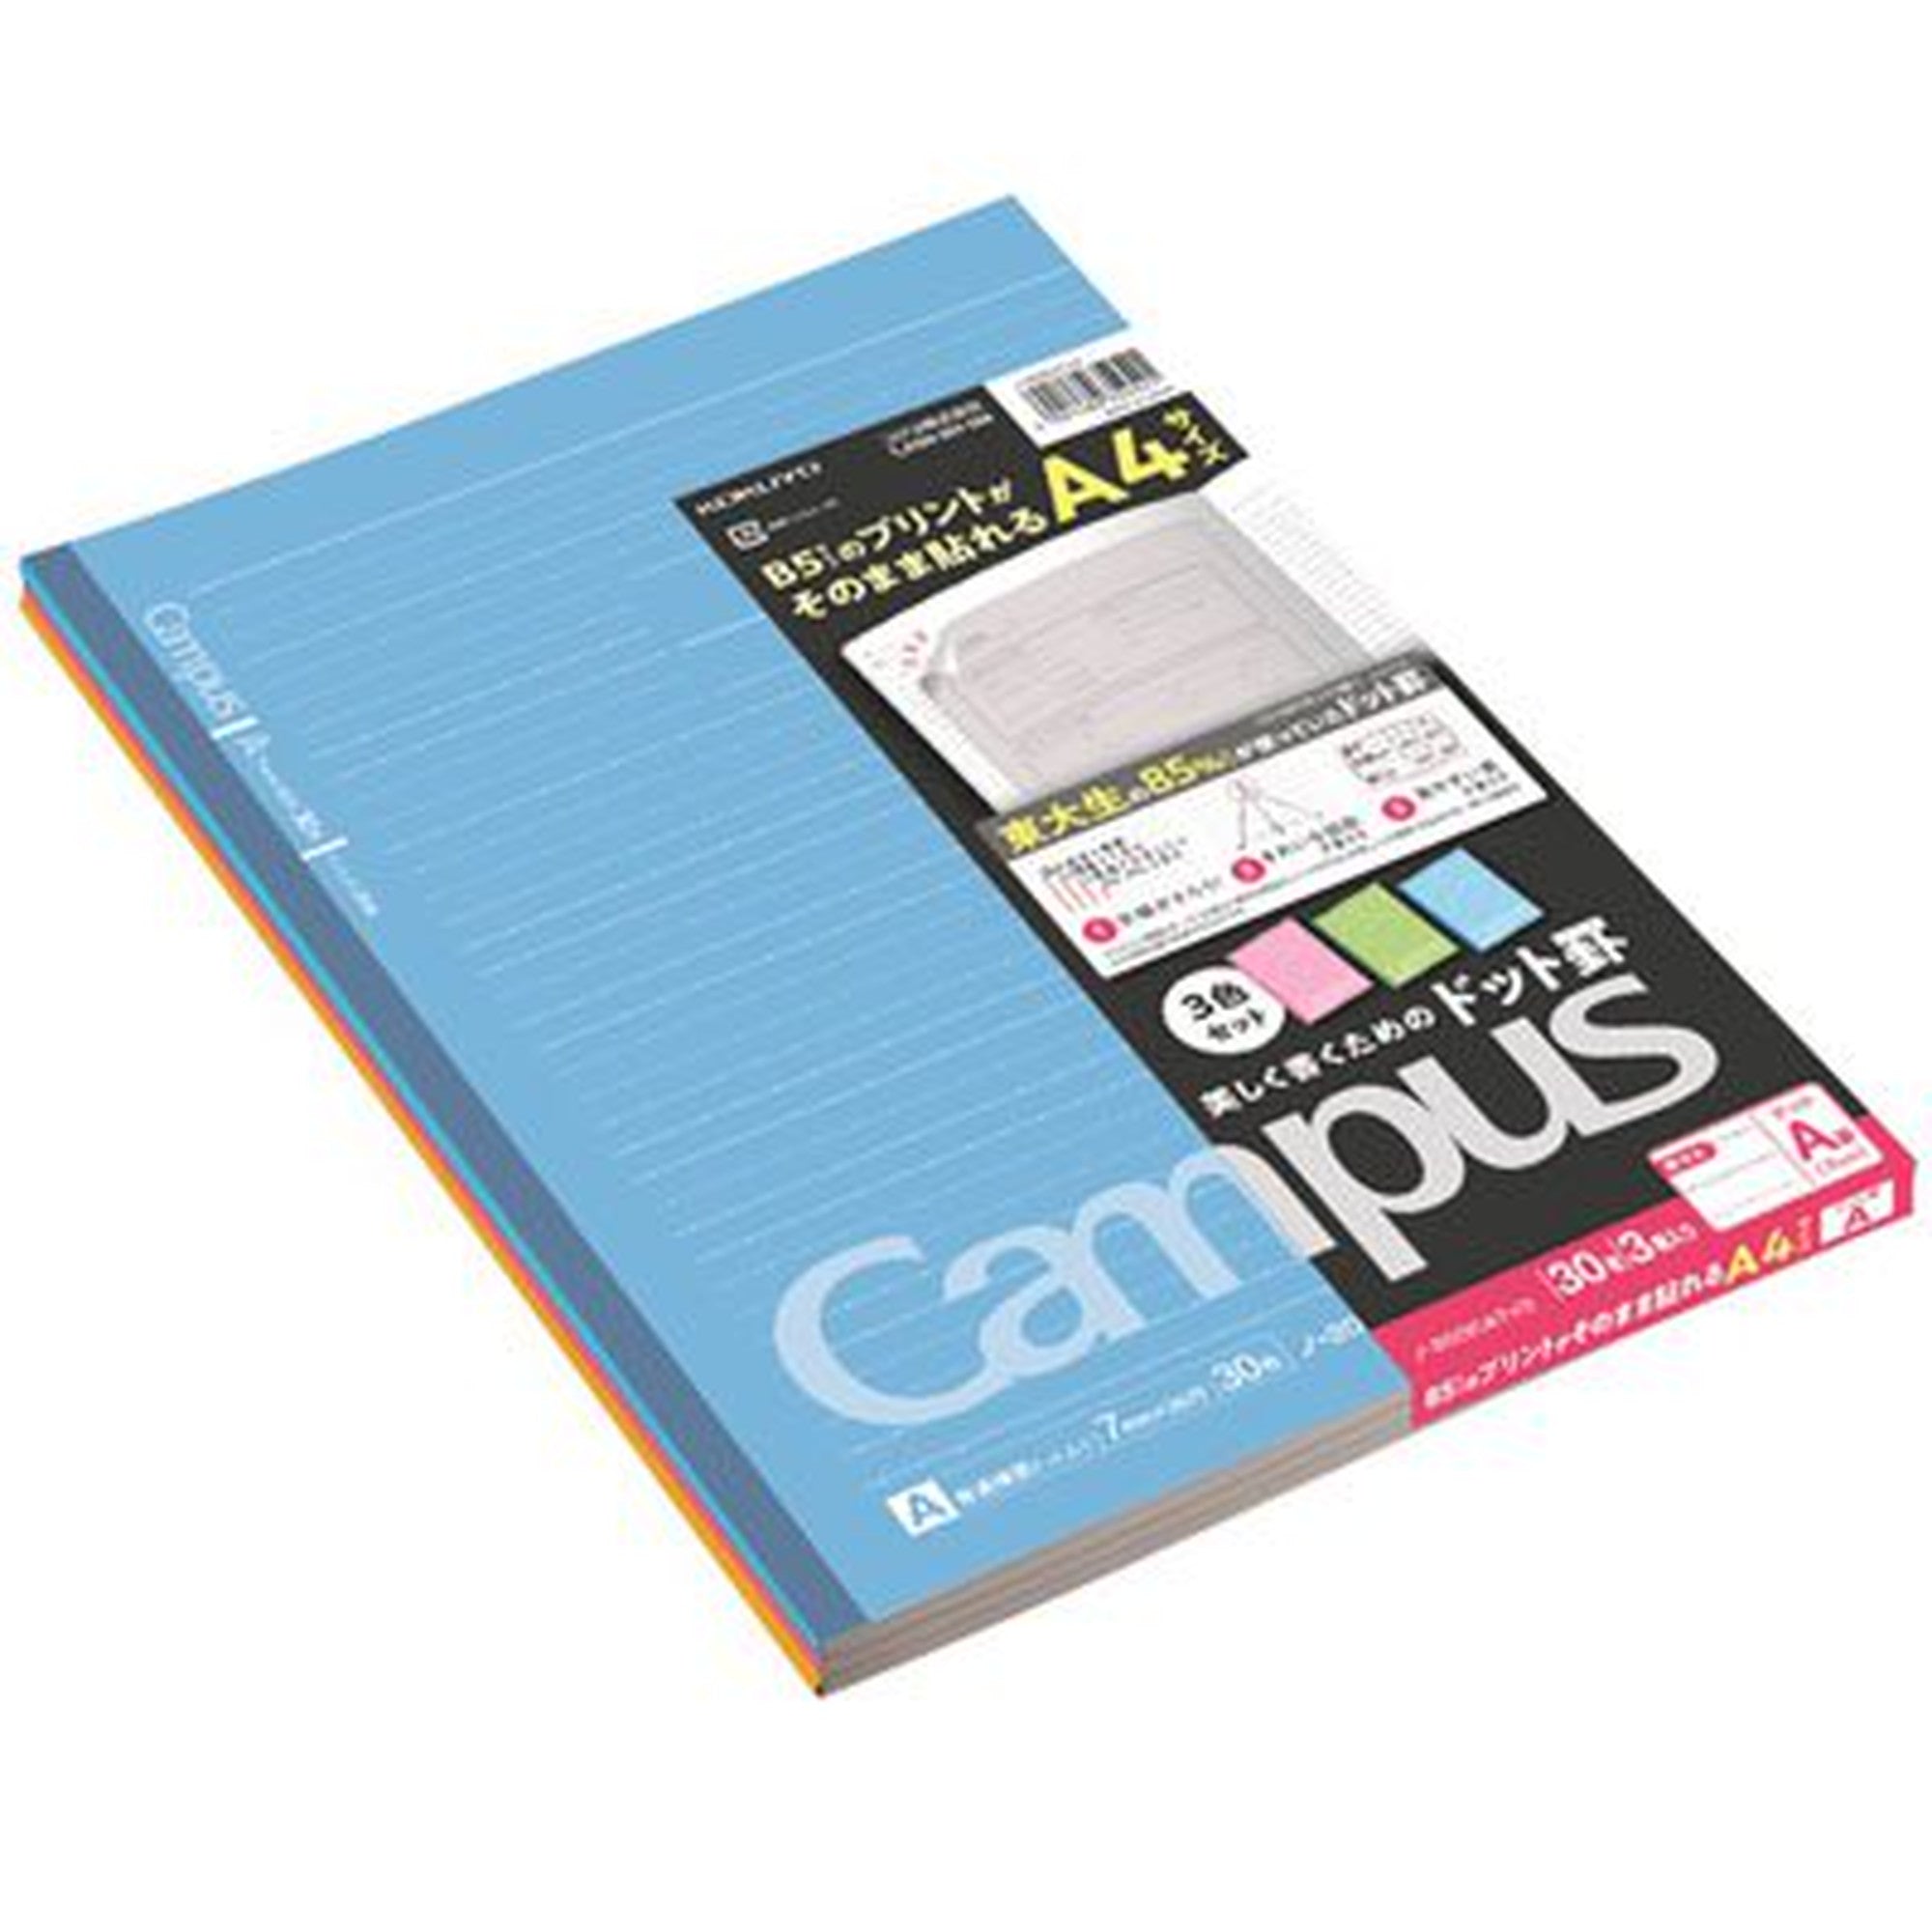 コクヨ キャンパスノート (ドット入り罫線・カラー表紙) A罫 3色パック